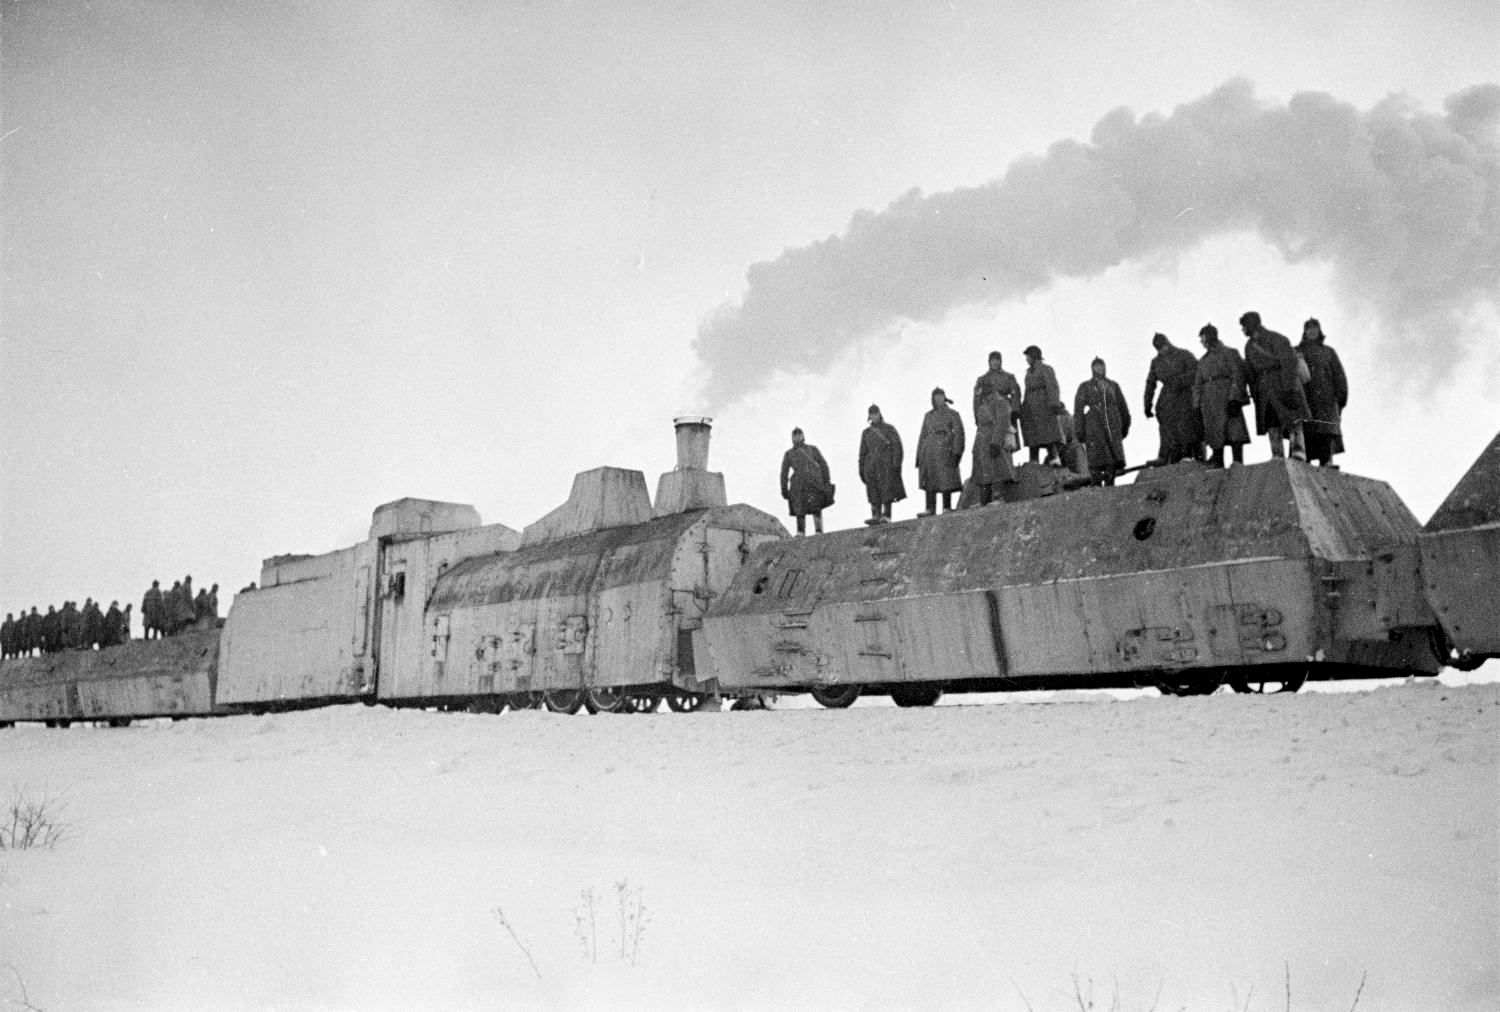 бронепоезд №2 23-го отдельного дивизиона бронепоездов на станции Люблино Московской окружной железной дороги. янв 1942. броневагон БО-3 якобы